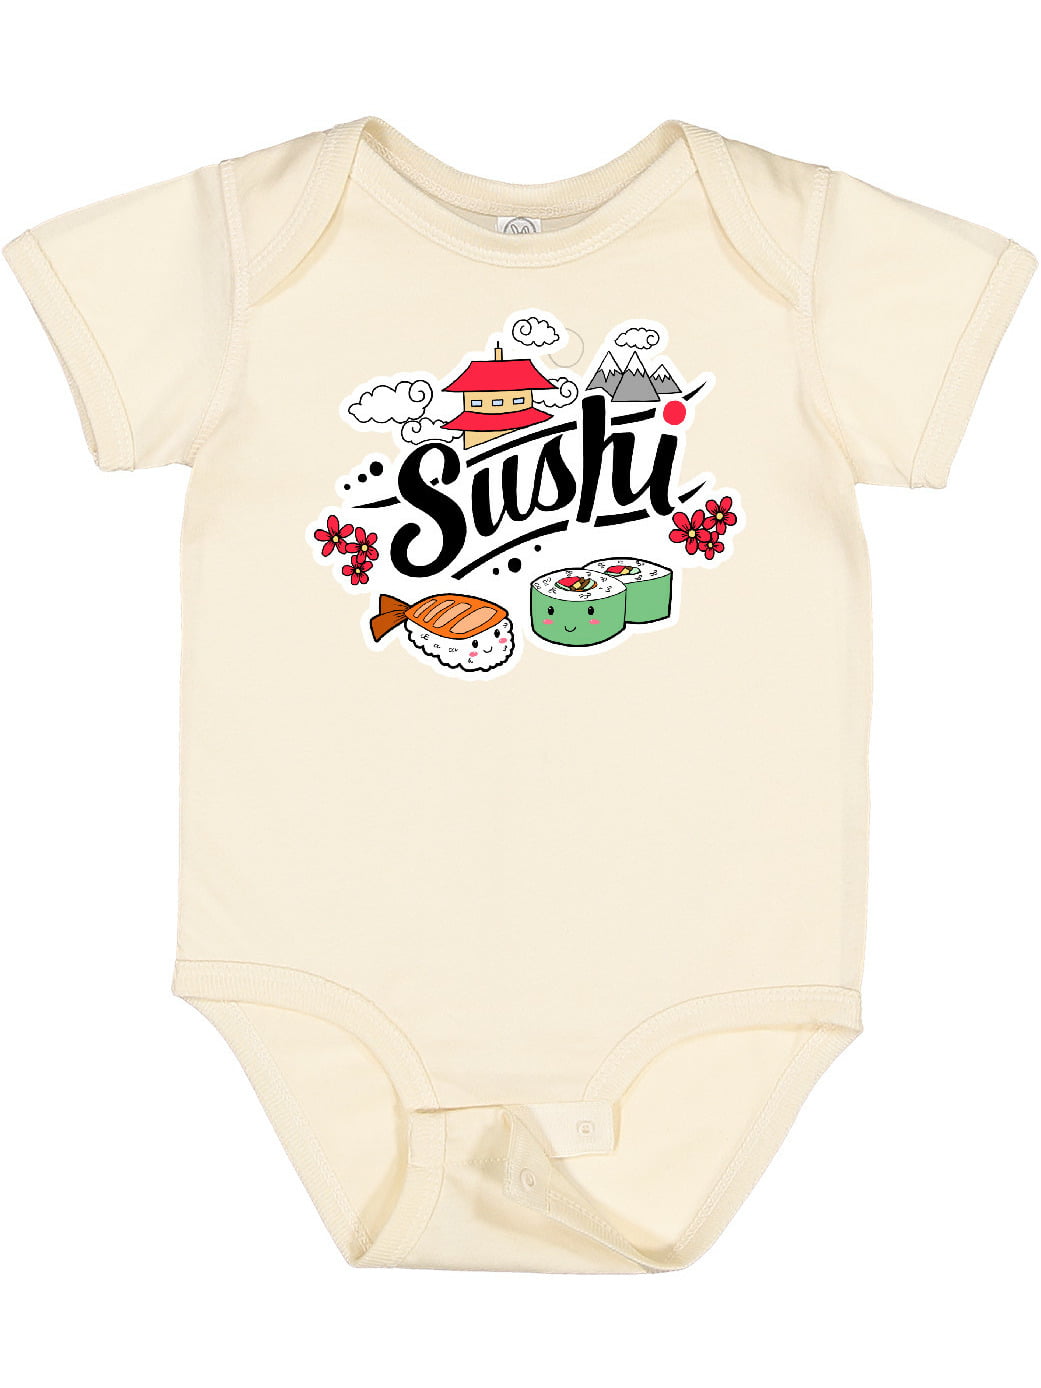 Sloth Loves Sushi Unisex Baby Short-Sleeve Fashion Bodysuit 